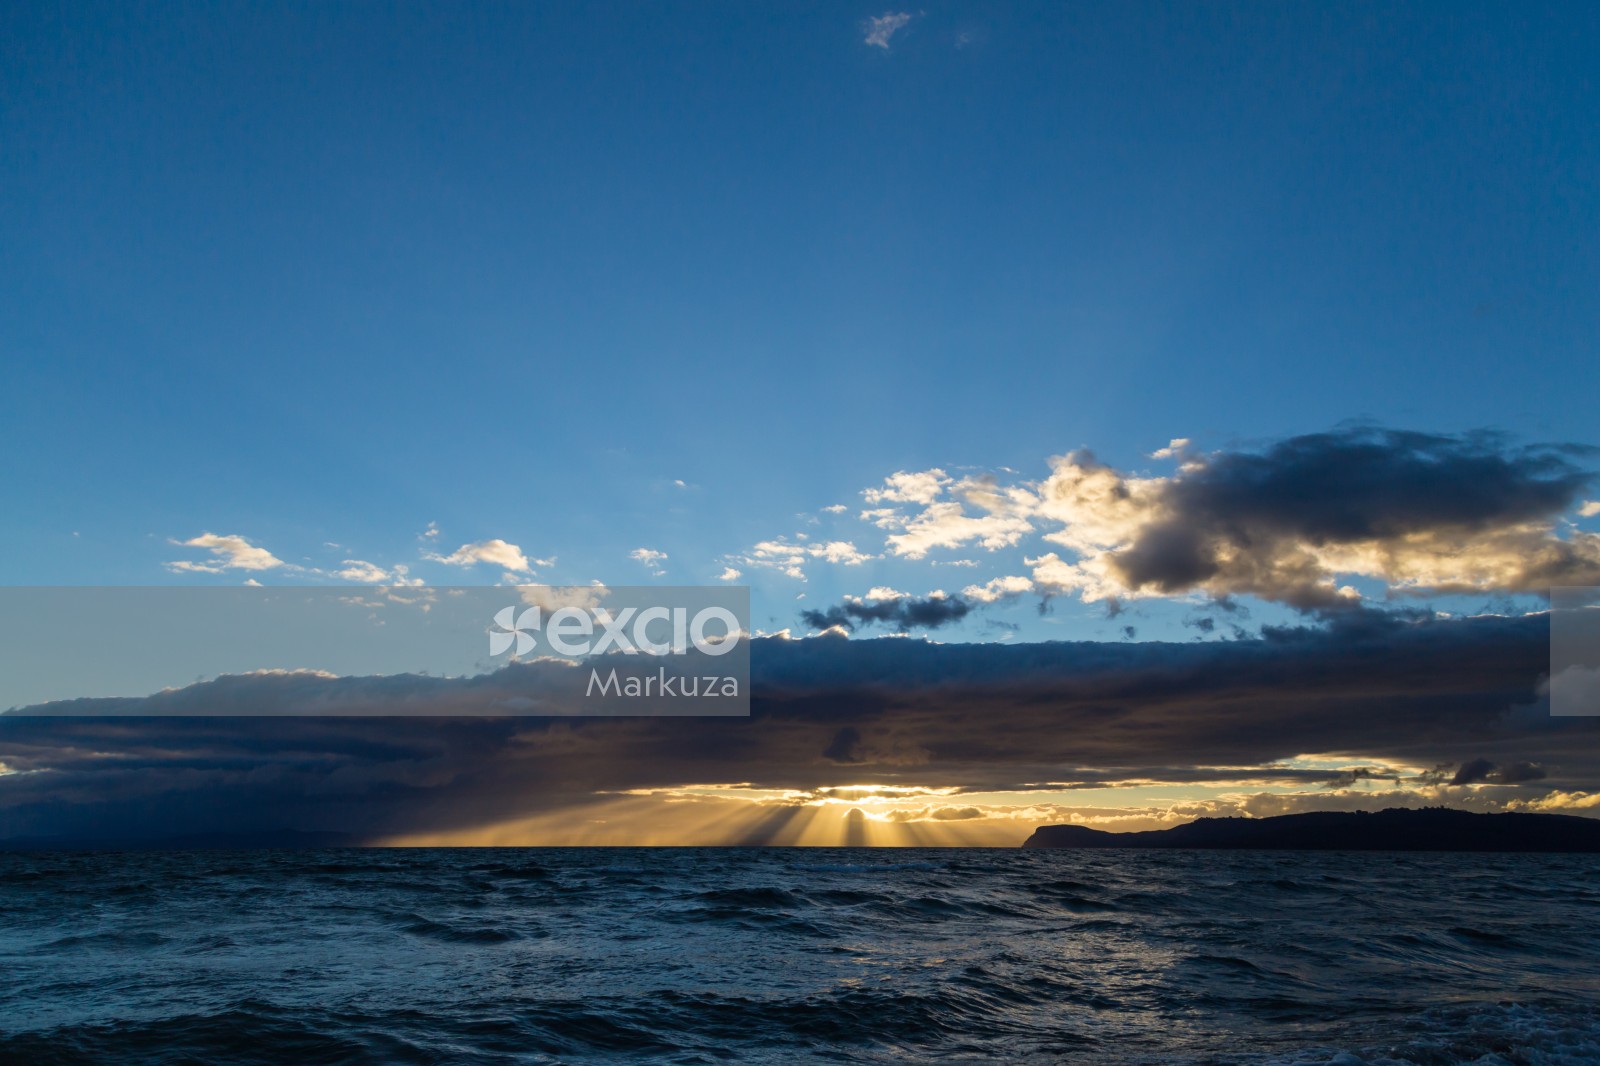 The last sun over lake Taupo